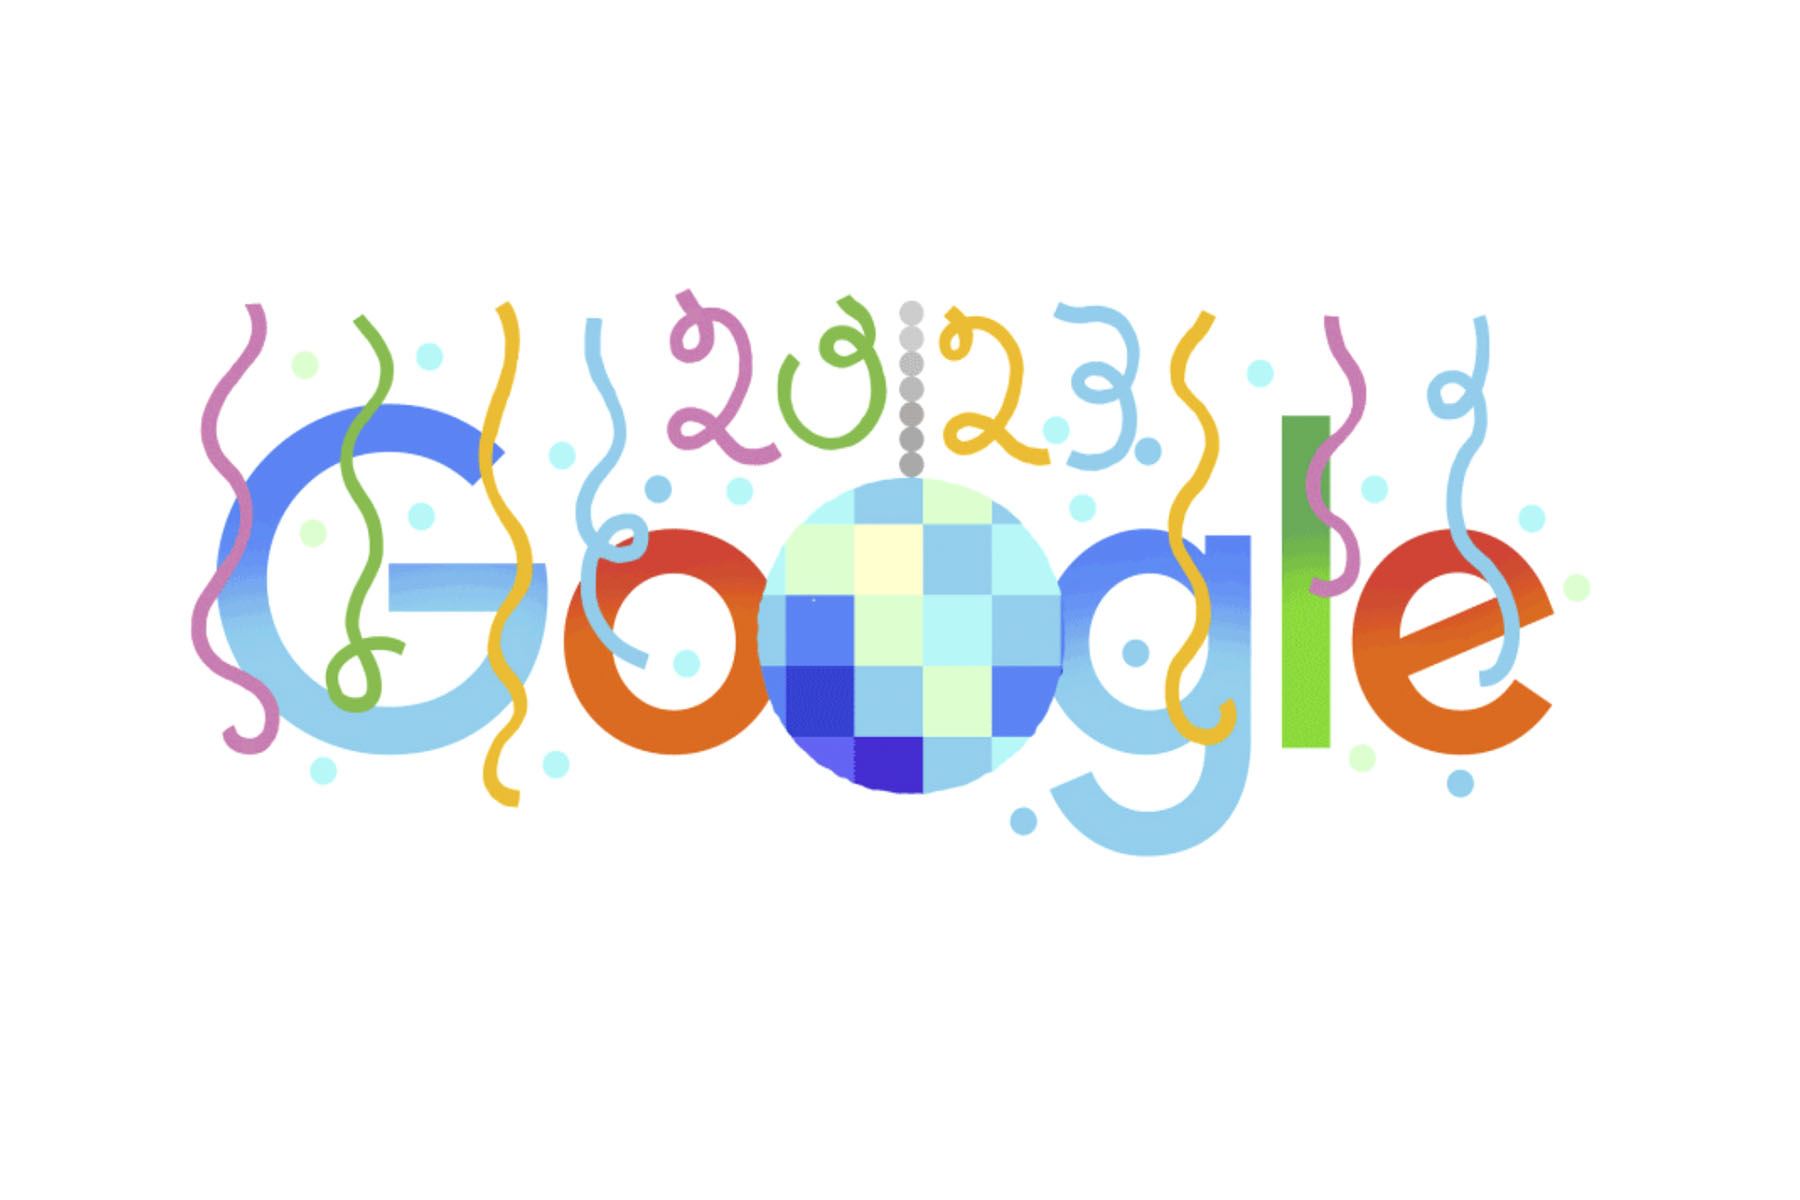 Como cada año, Google estrenó un nuevo doodle con motivo del Año Nuevo.